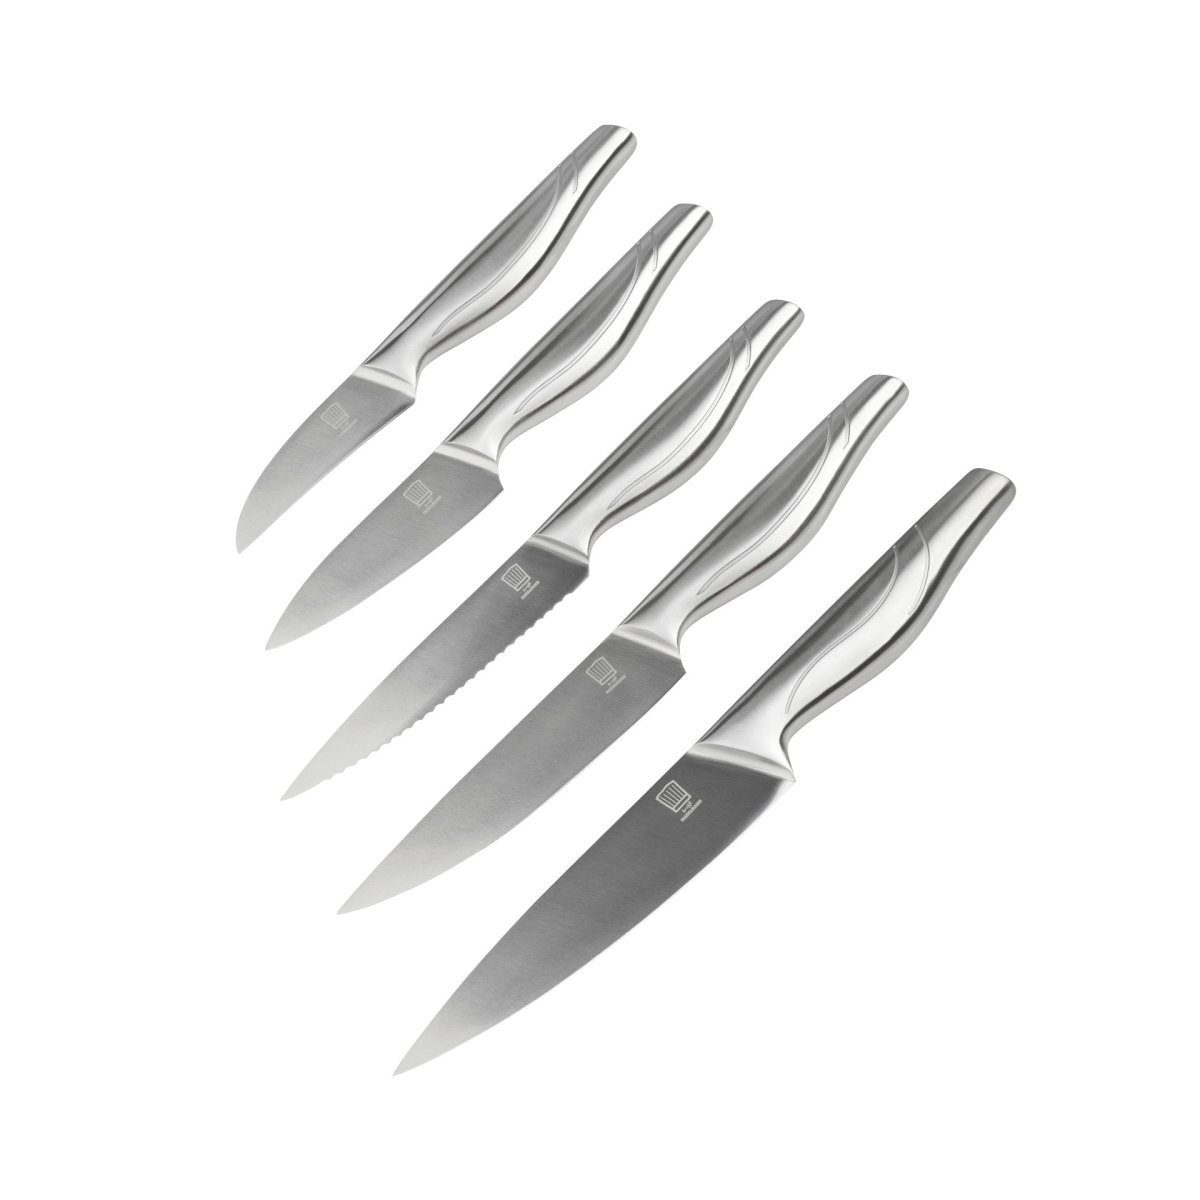 5-teilige Messersets online kaufen | OTTO